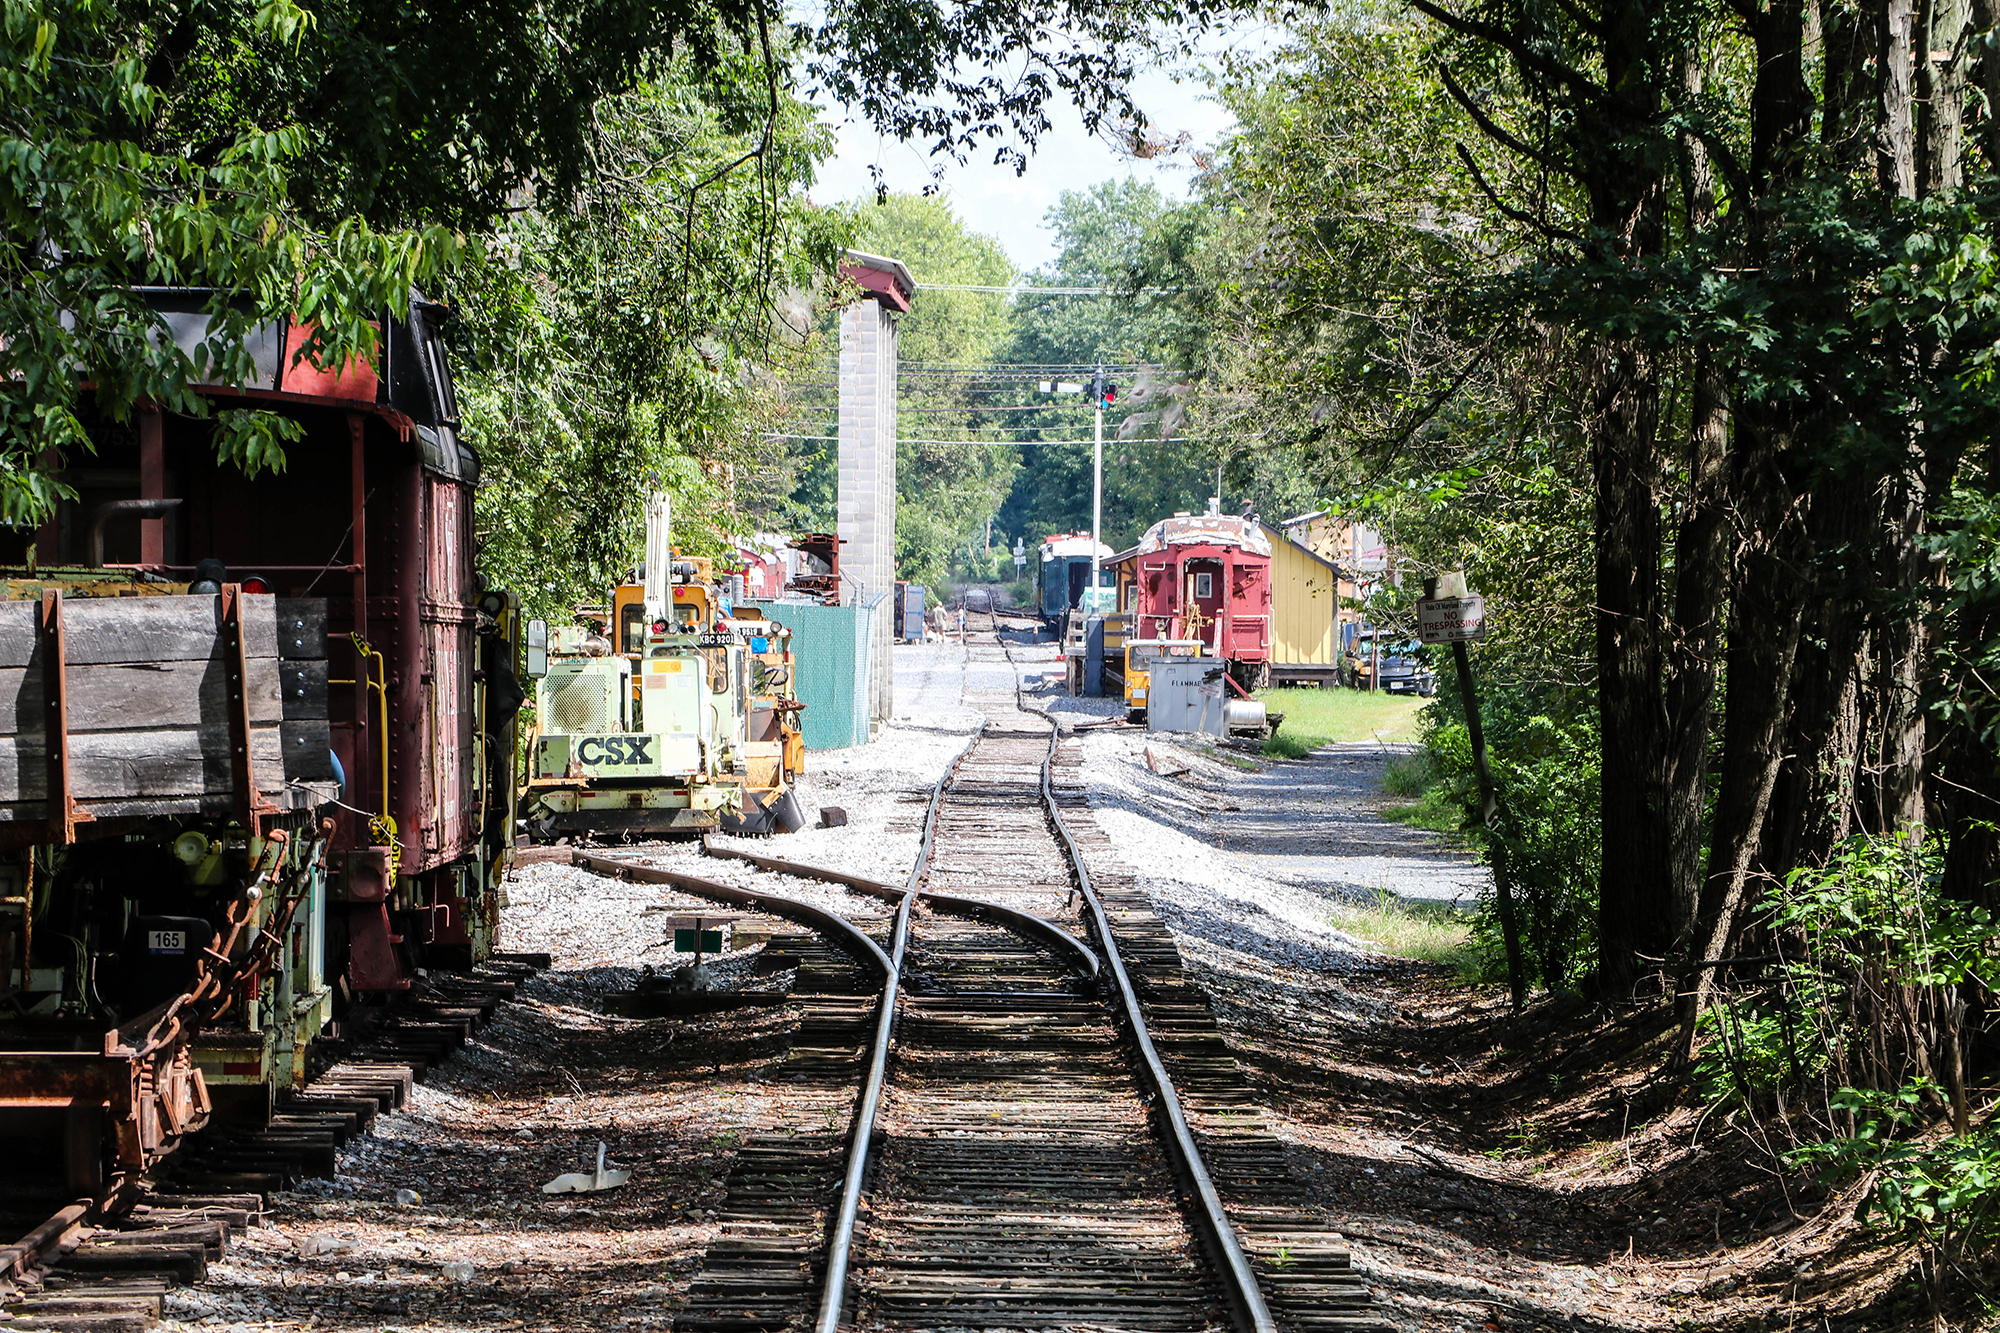 Walkersville Southern Railroad